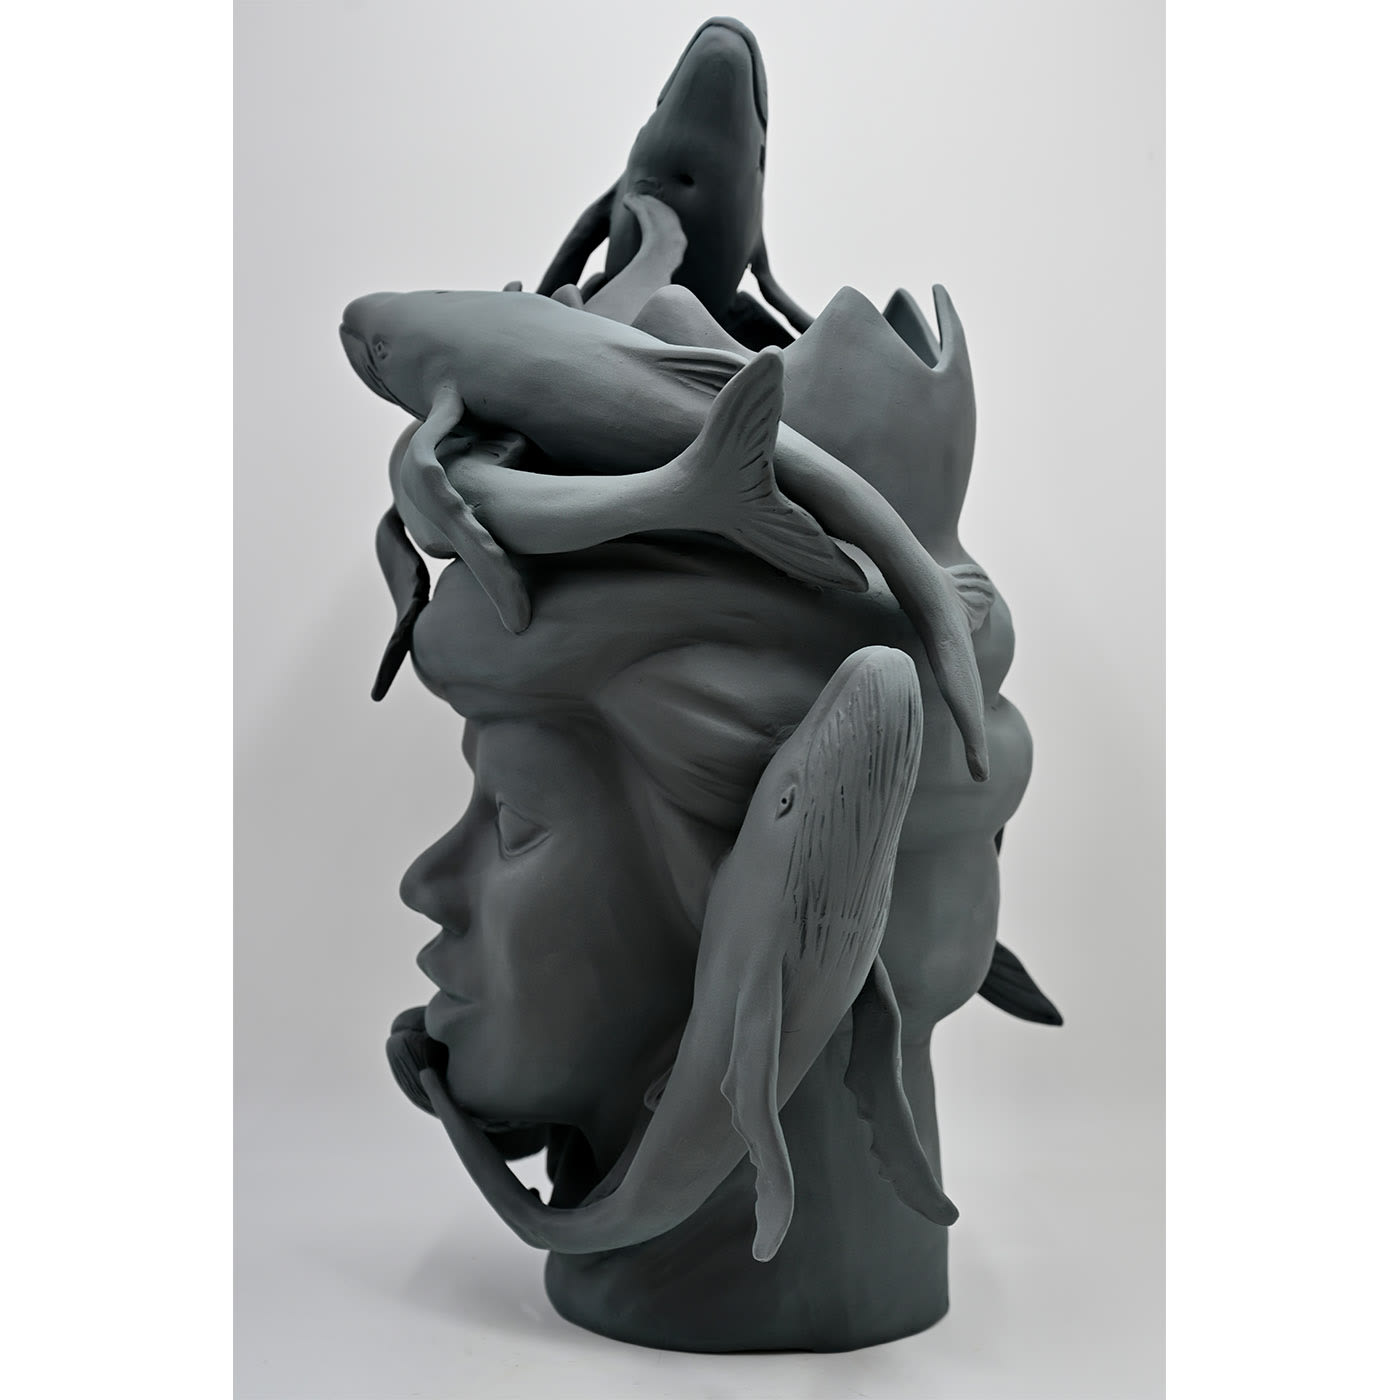 Moor's Head Sculpture in Charcoal Grey